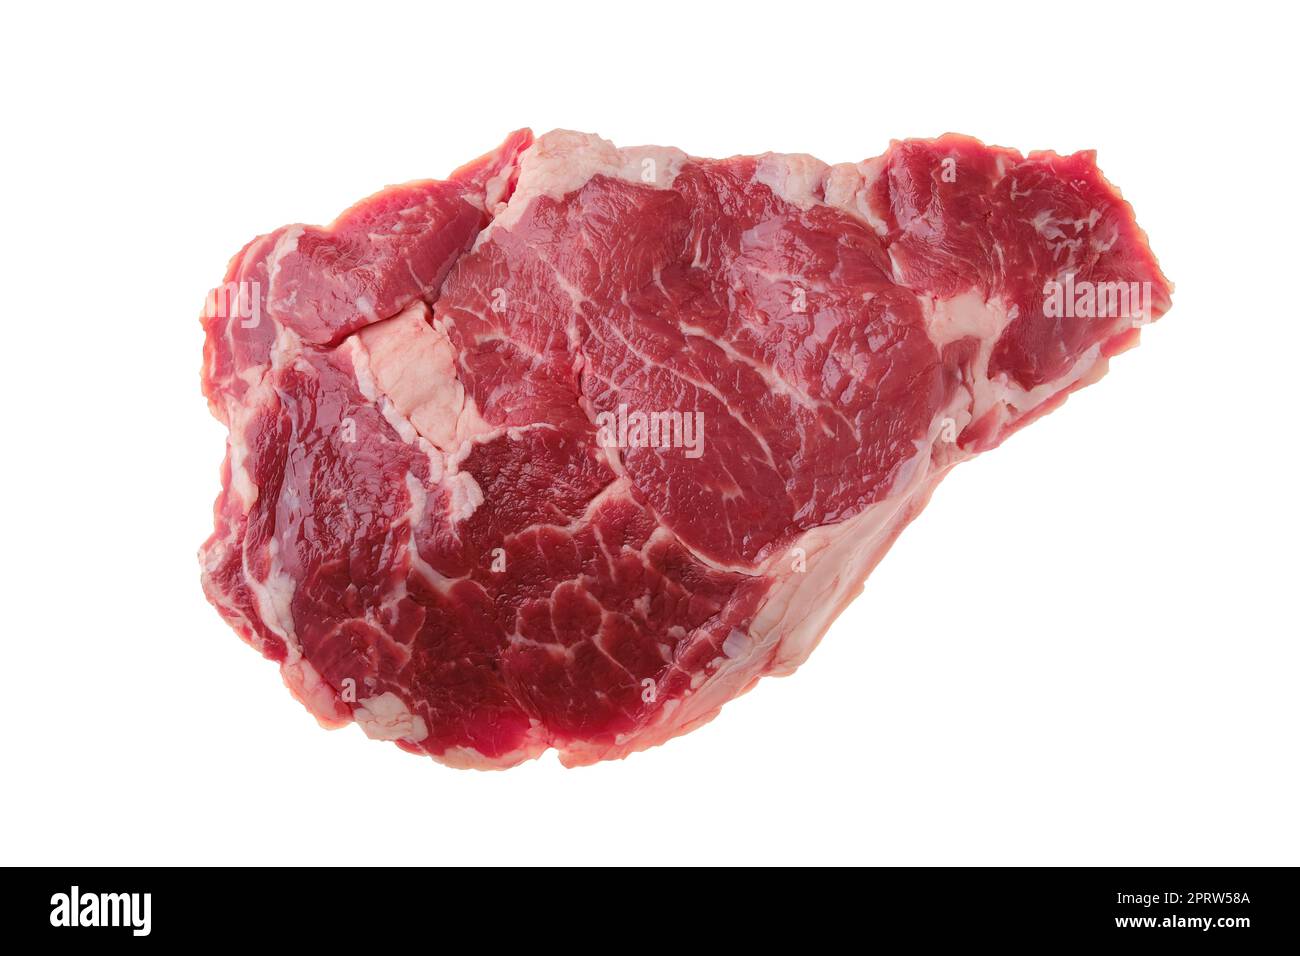 Vue en hauteur du steak de ribeye cru, viande désossée de bœuf de qualité supérieure isolée sur blanc Banque D'Images